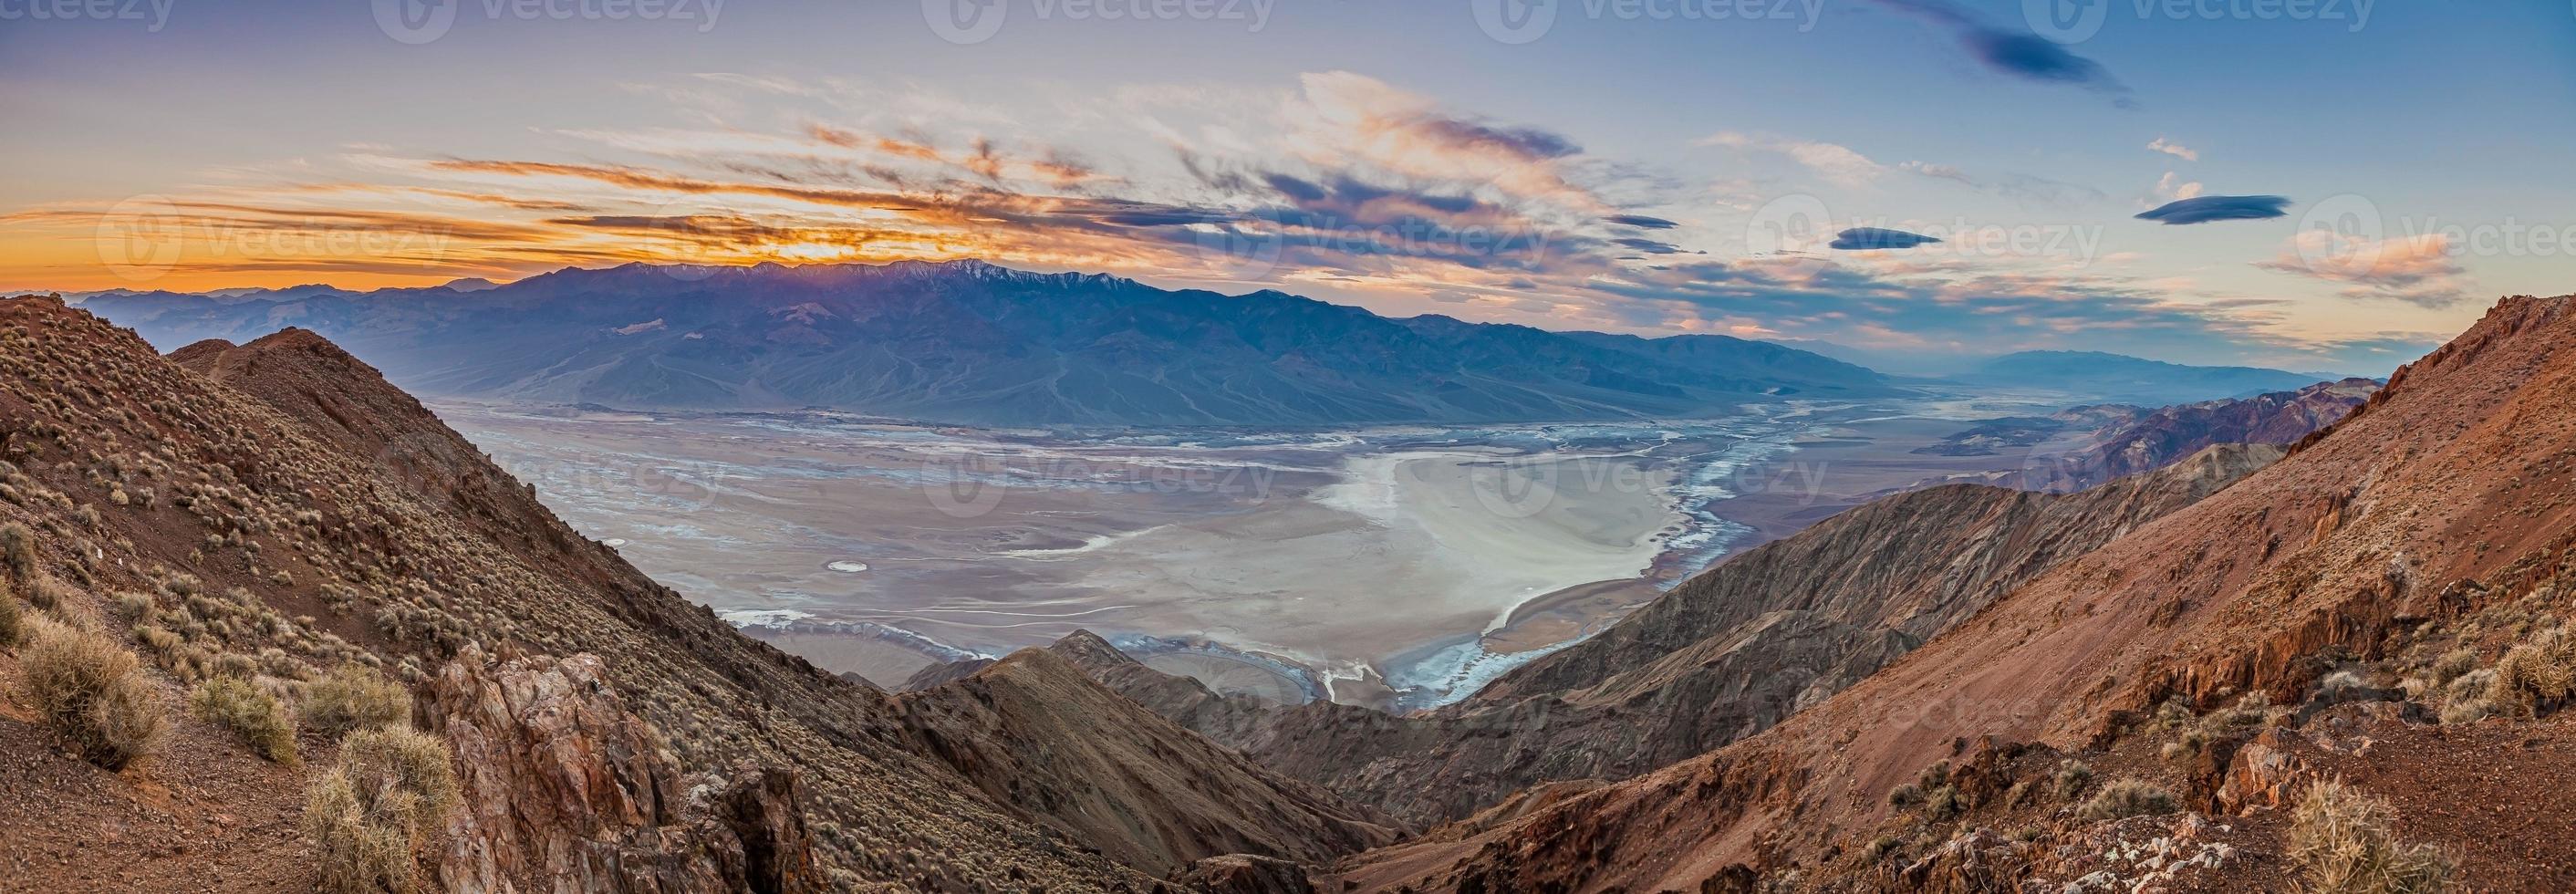 panorama- bild av död dal i oss stat nevada från dantes topp synpunkt foto